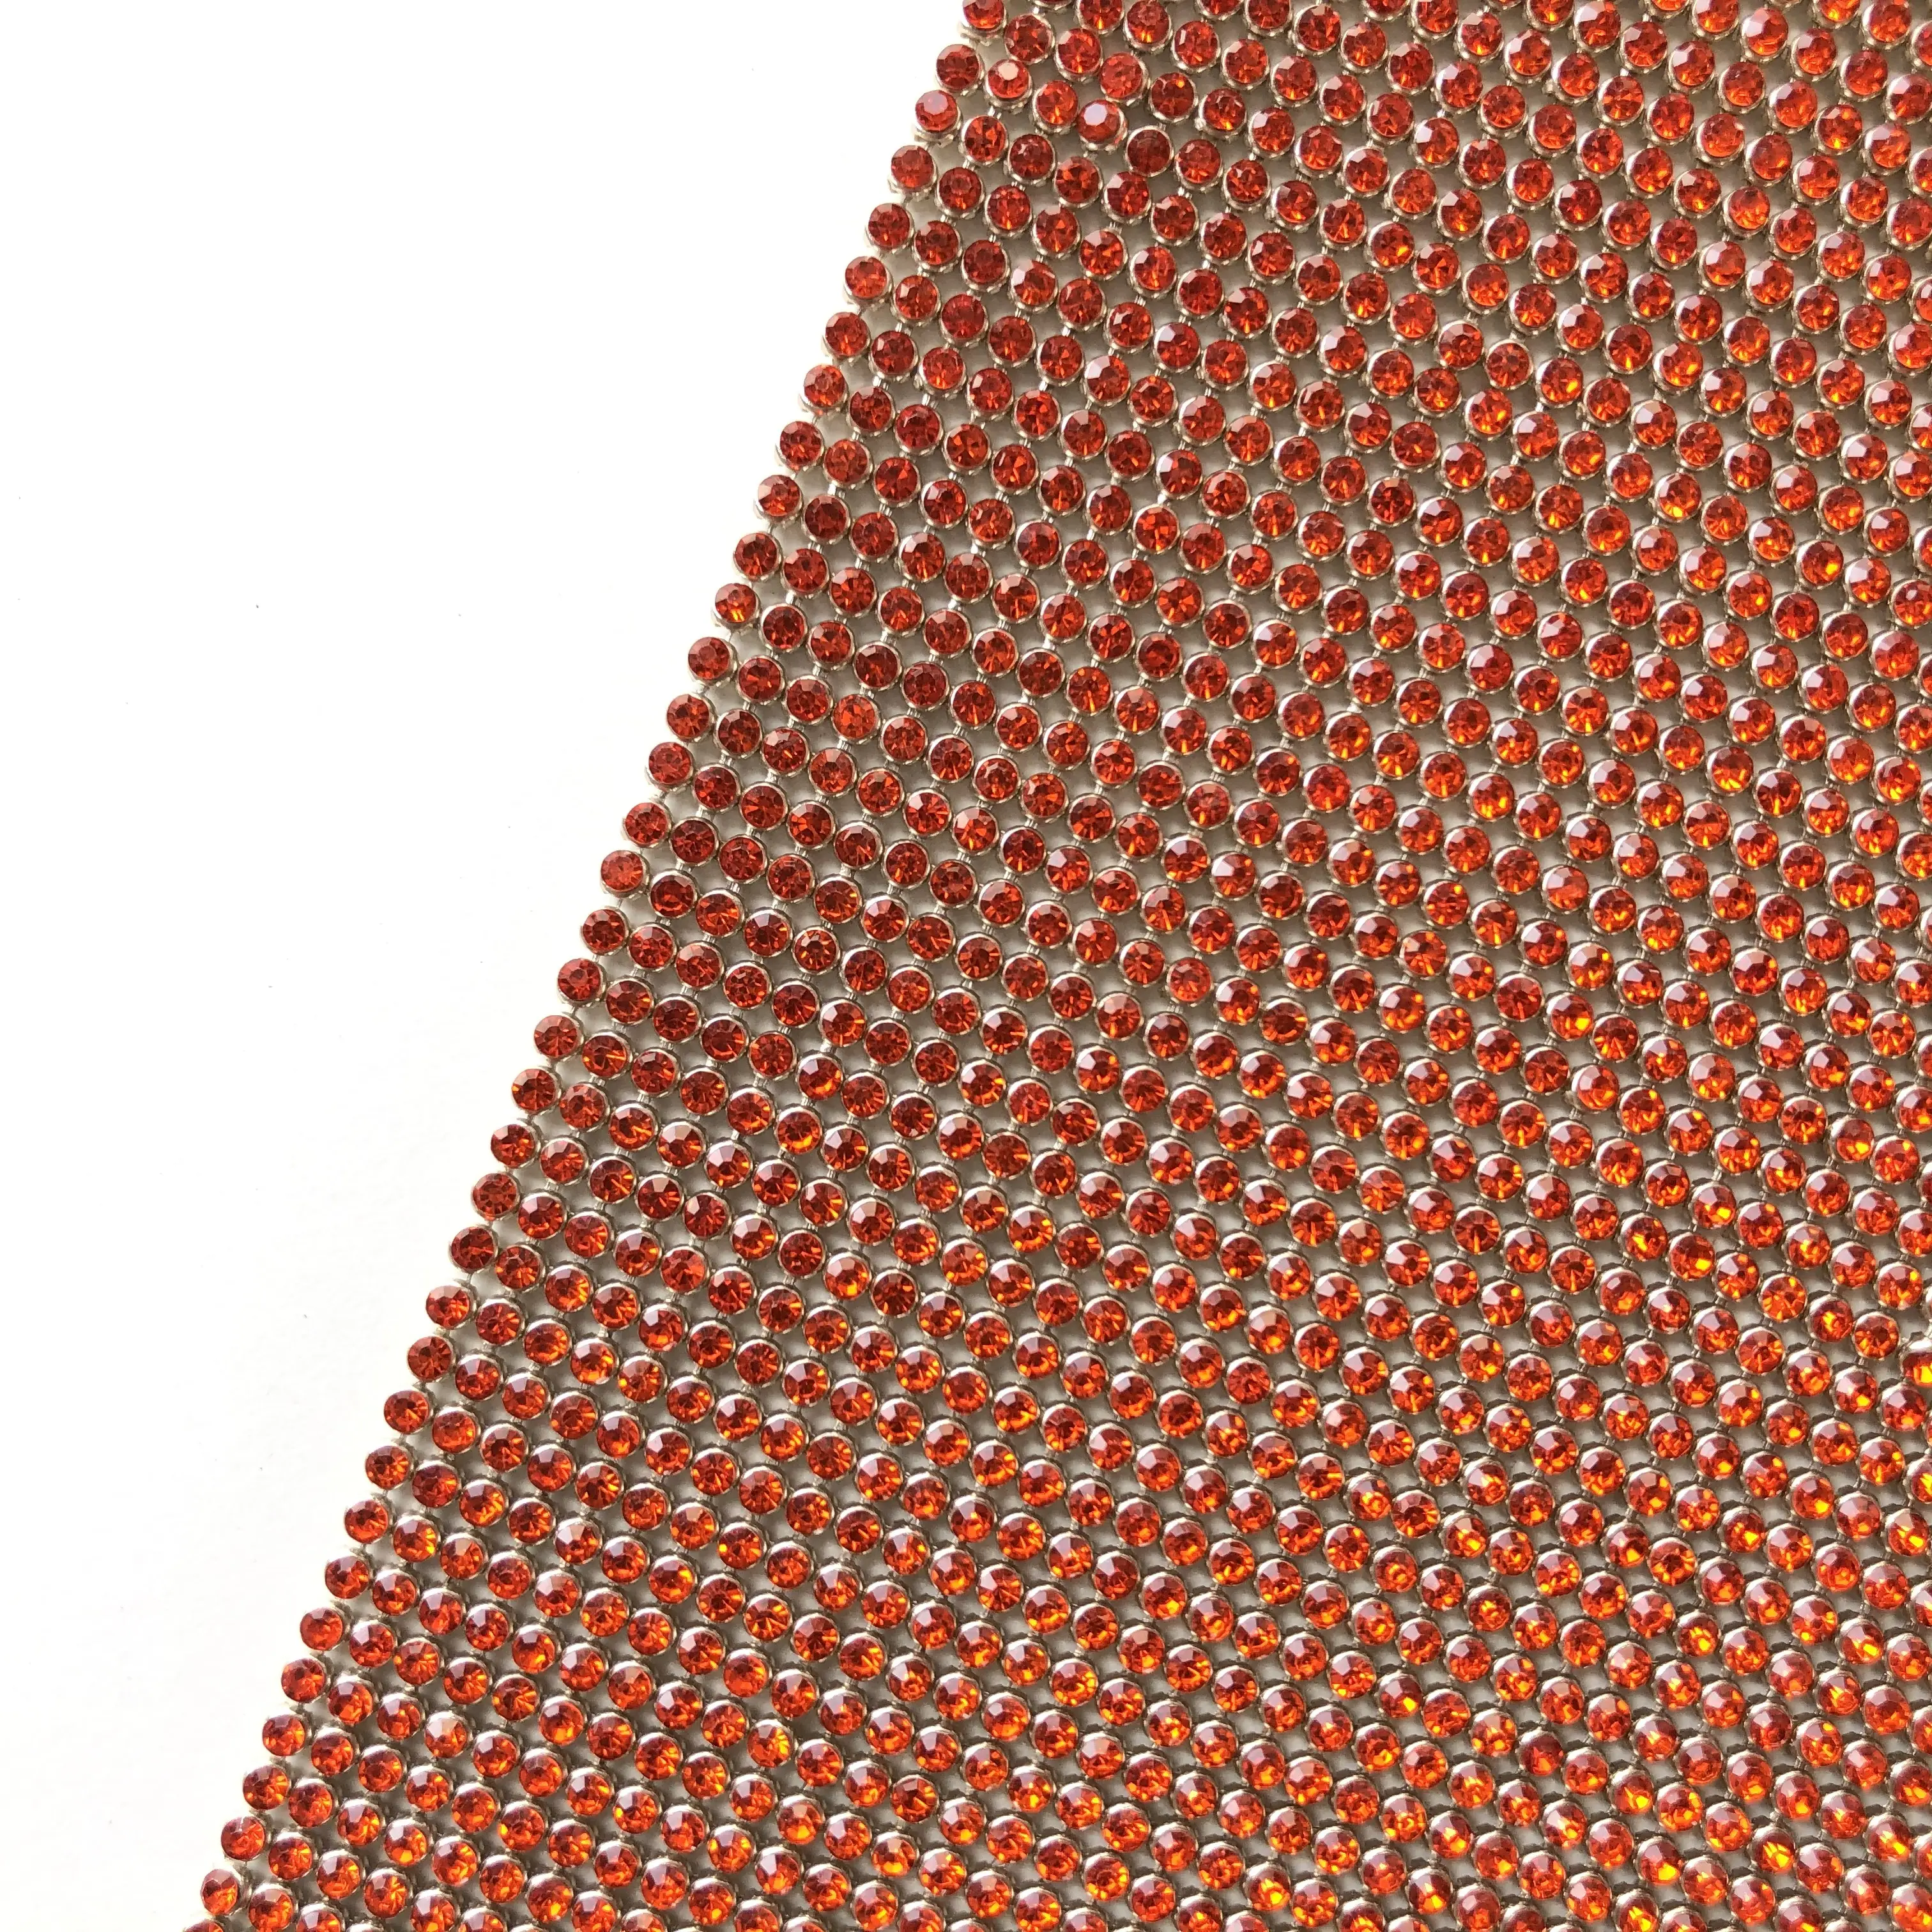 Base métallique en aluminium diamant Orange avec cristaux cristal transparent maille strass maille rouleau cristal maille tissu